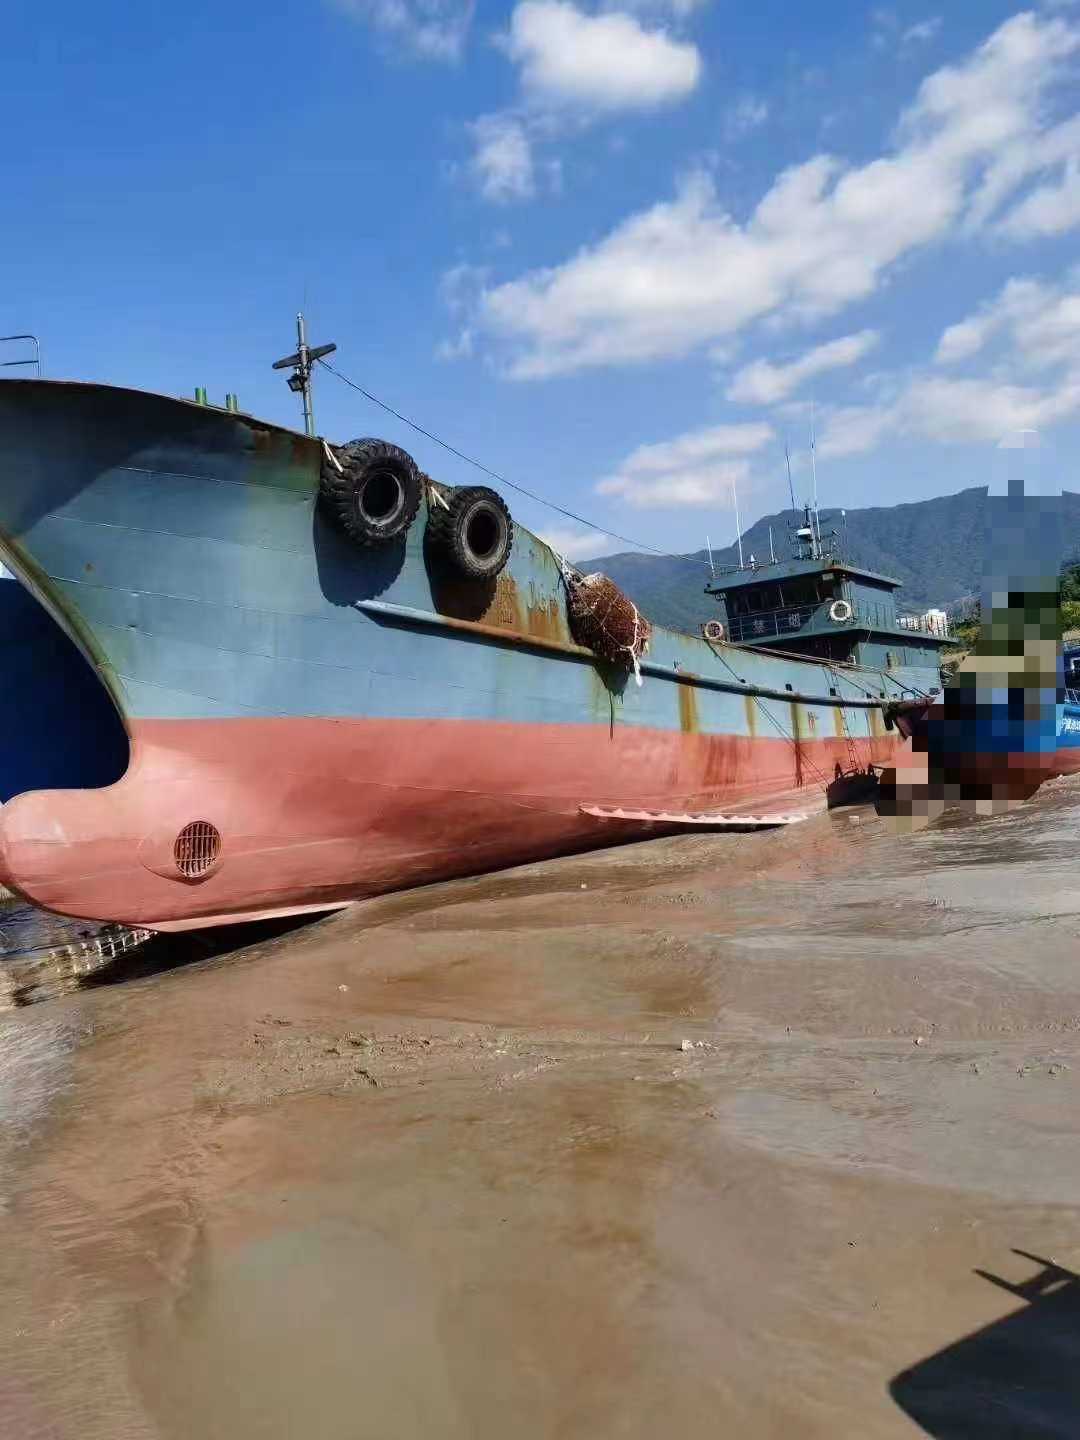 出售:内河加油船